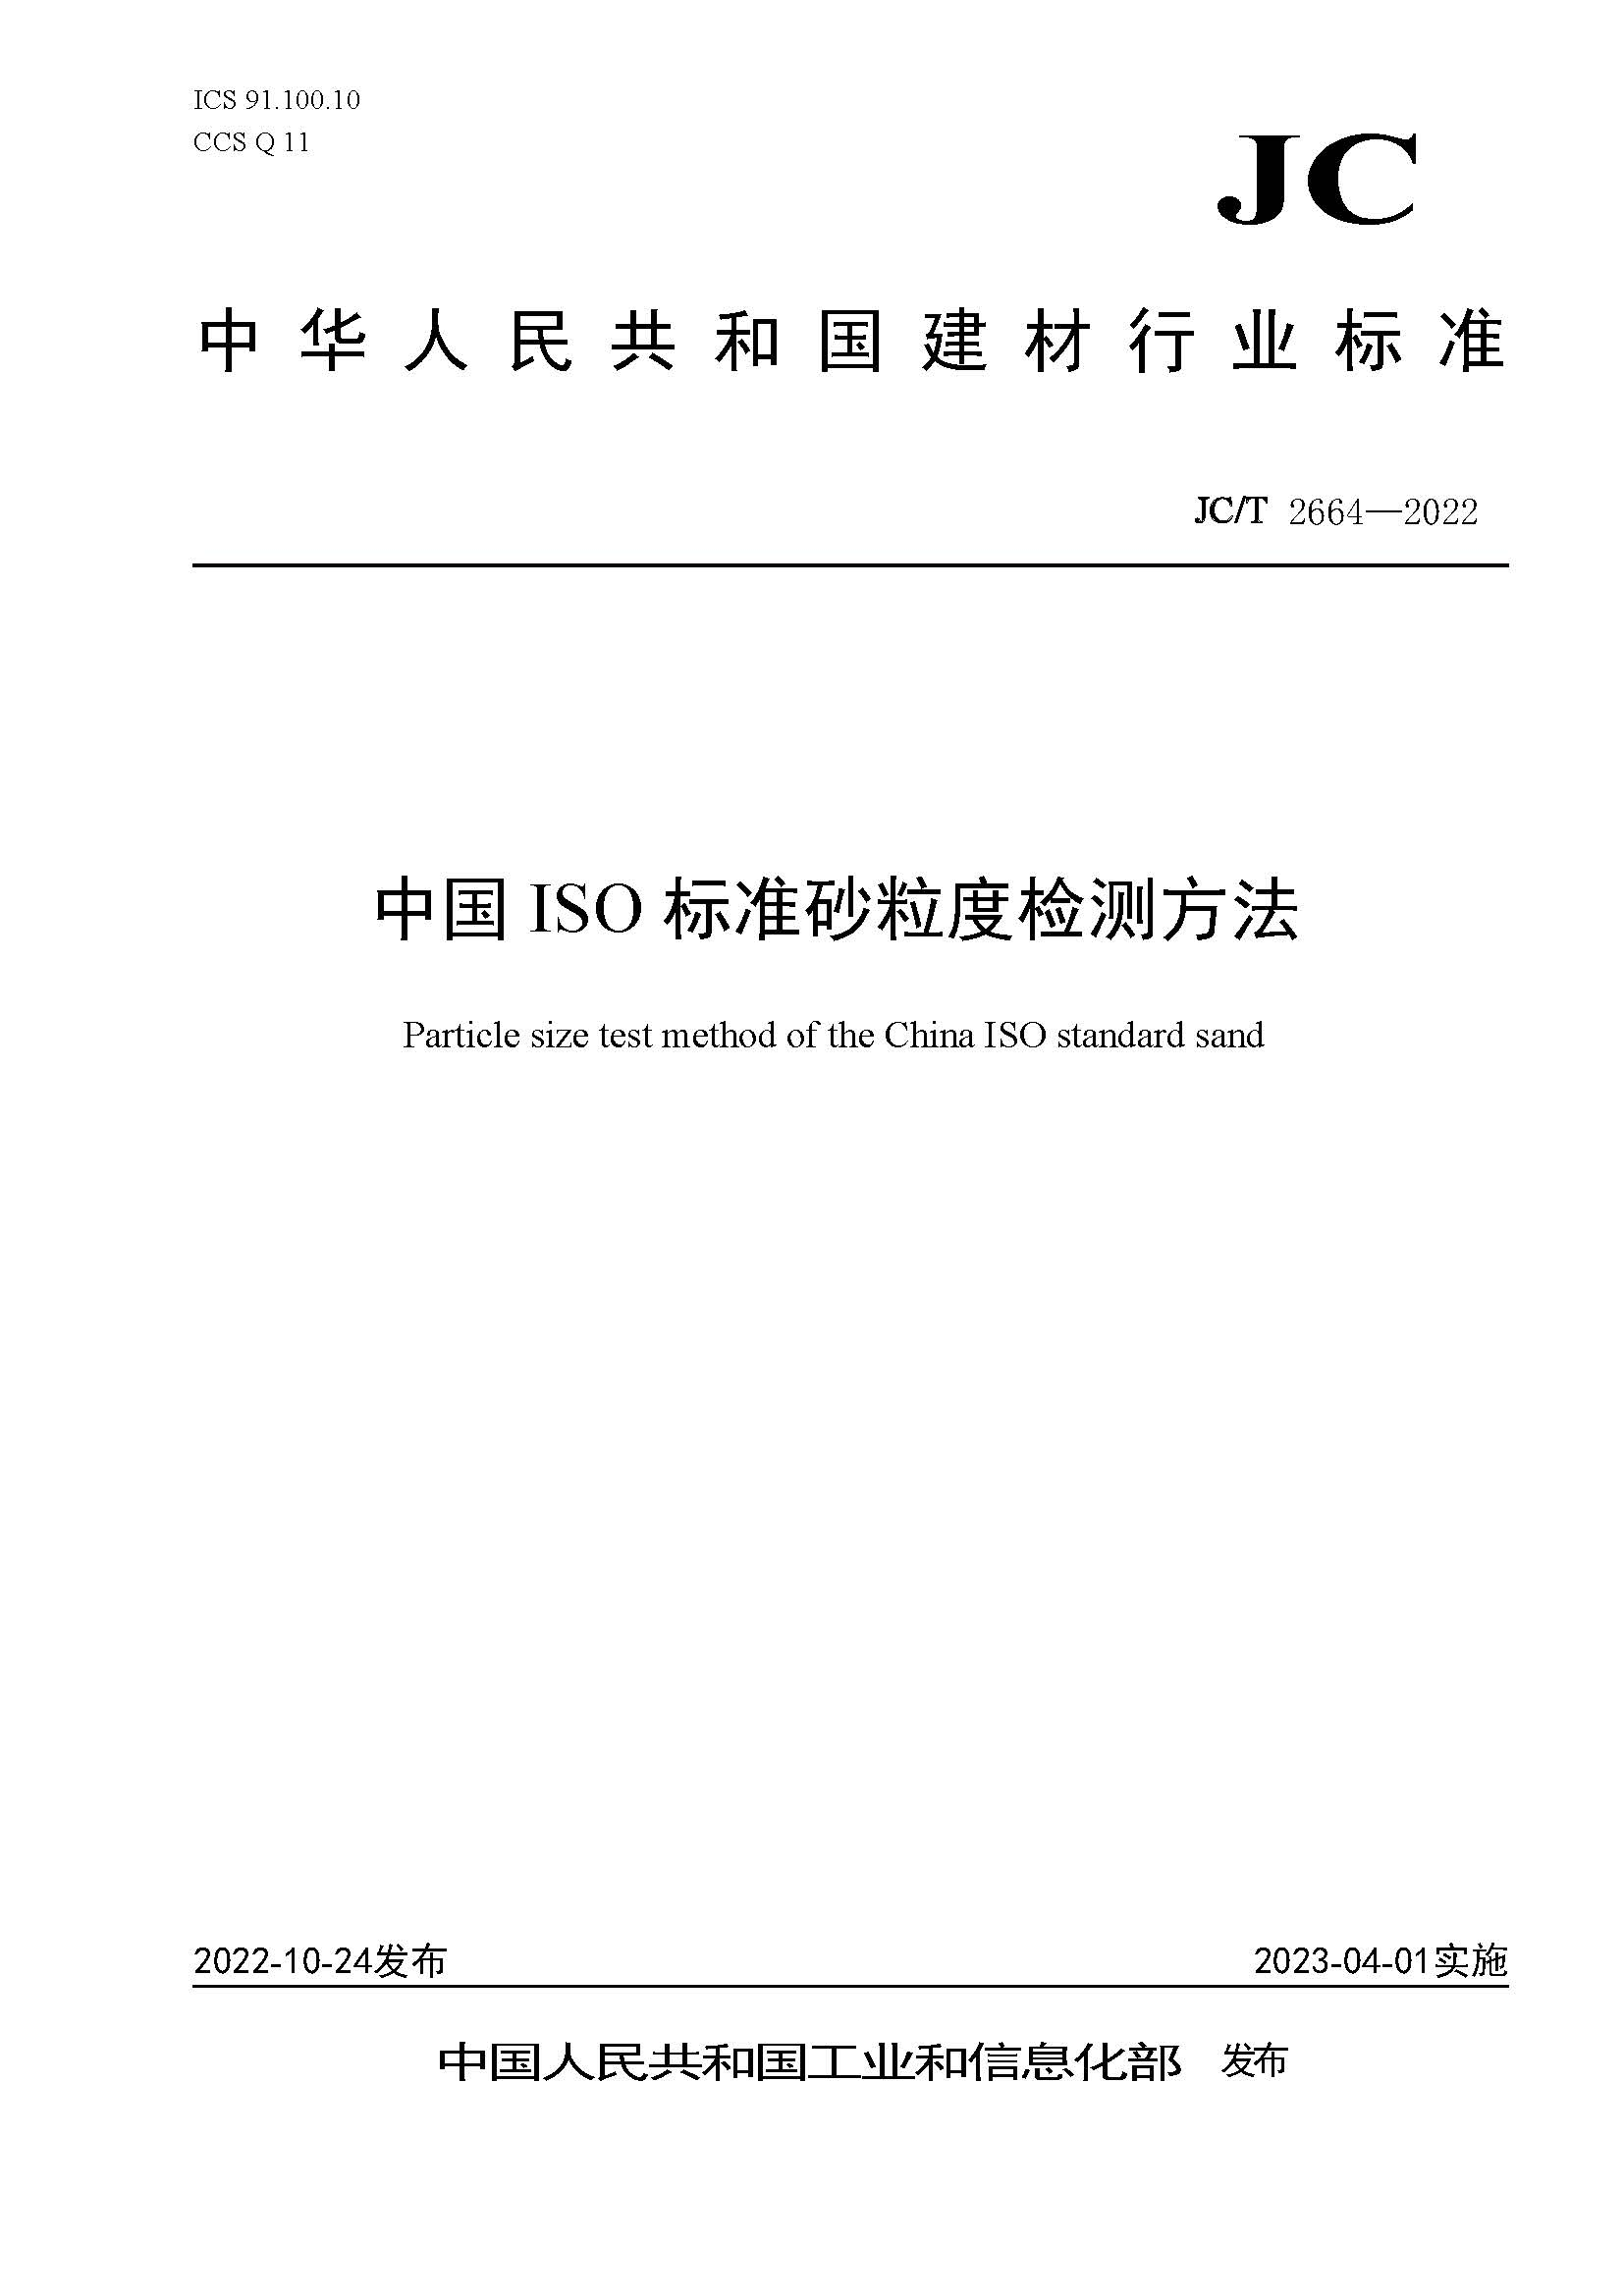 厦门标准砂起草制定的《中国ISO标准砂粒度检测方法》行业标准正式发布